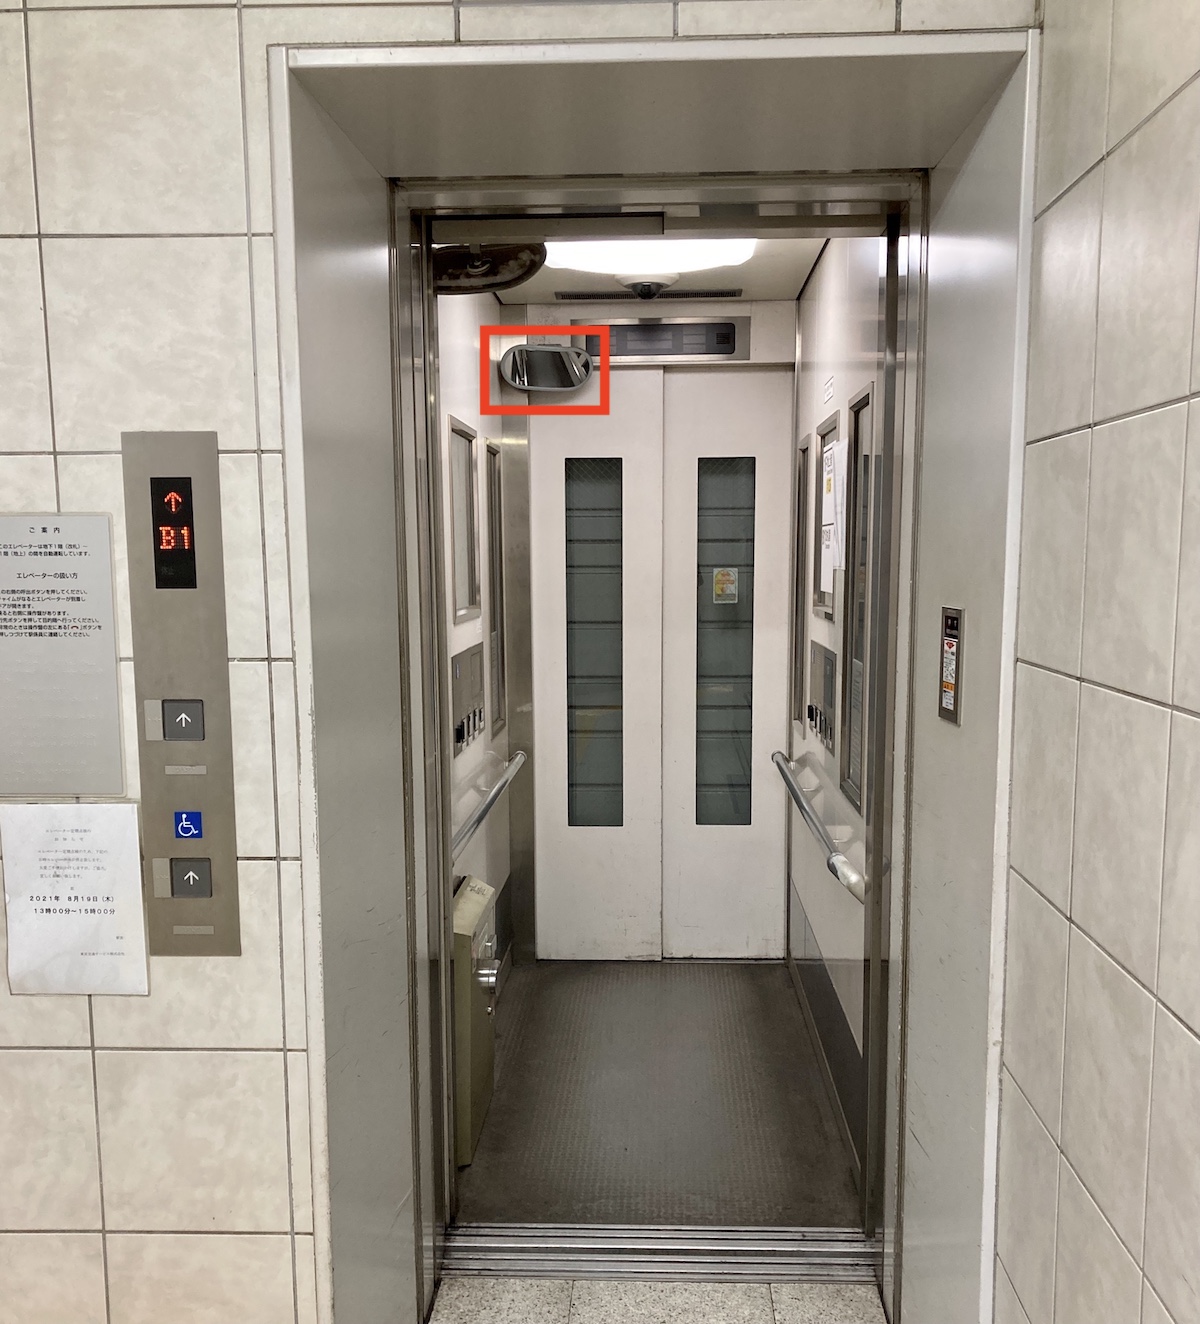 エレベーターに鏡がある本当の理由が意外だった ロケットニュース24